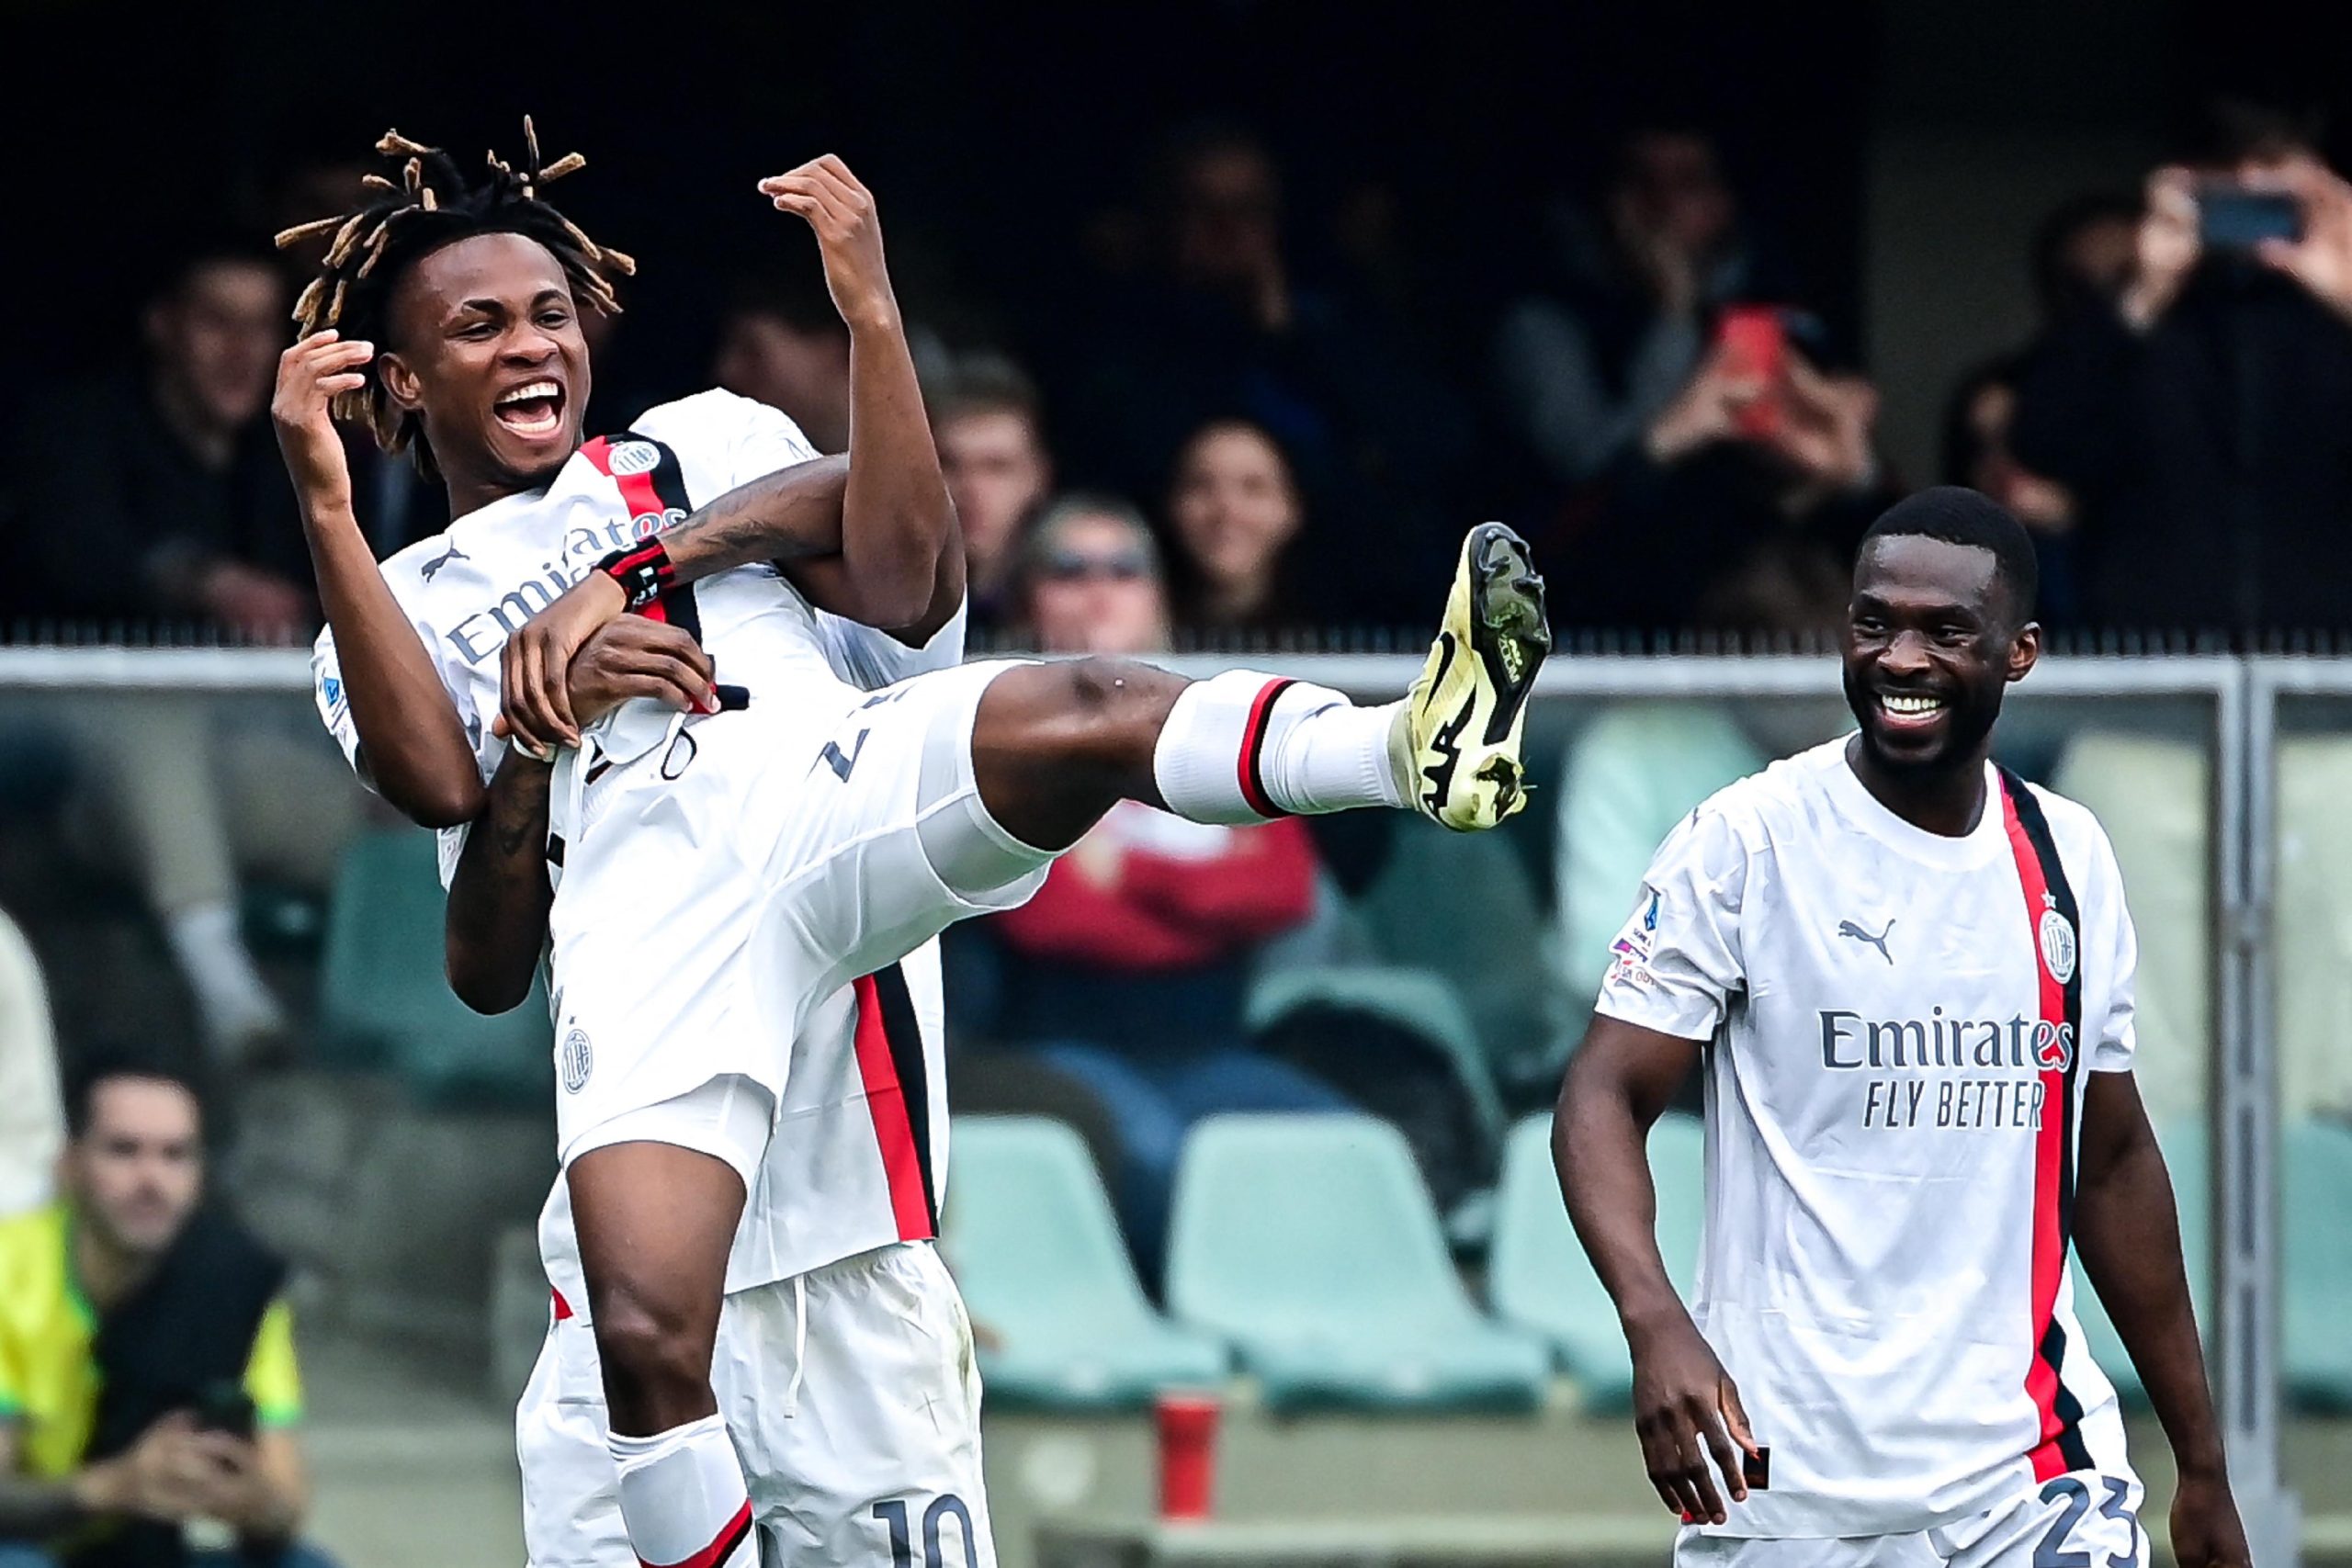 ‘He’s Doing Well’ — AC Milan Coach Backs Chukwueze To Score More Goals